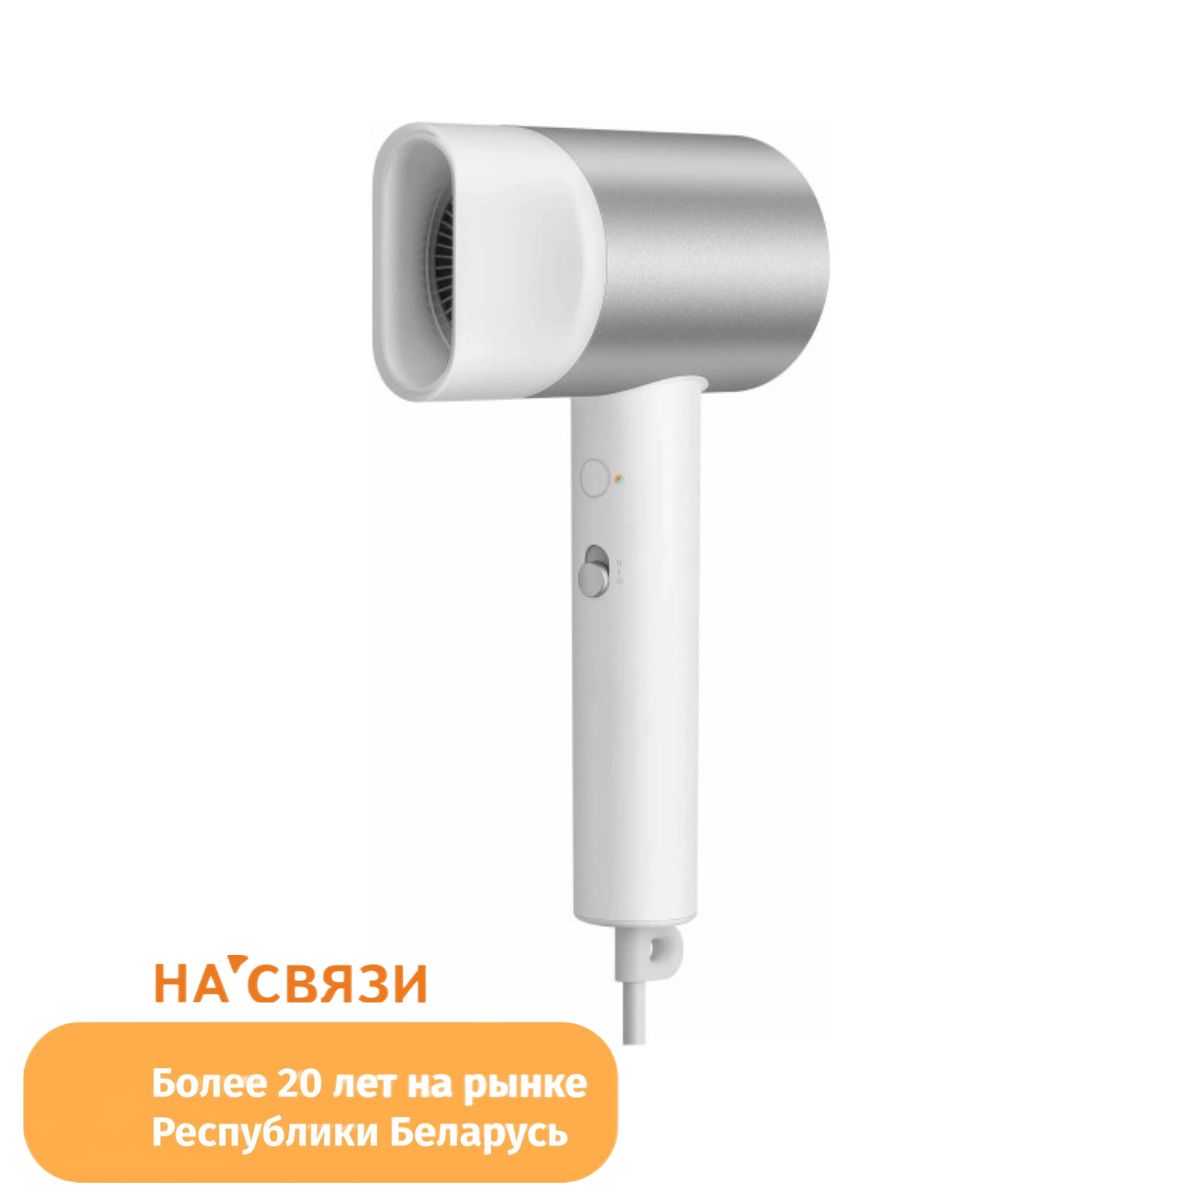 Л мин фен. Фен Xiaomi Mijia h500. Xiaomi Water Ionic hair Dryer h500 eu. Xiaomi Mijia Water Ionic hair Dryer h500. Фен Xiaomi Mijia h500 (cmj03lx).